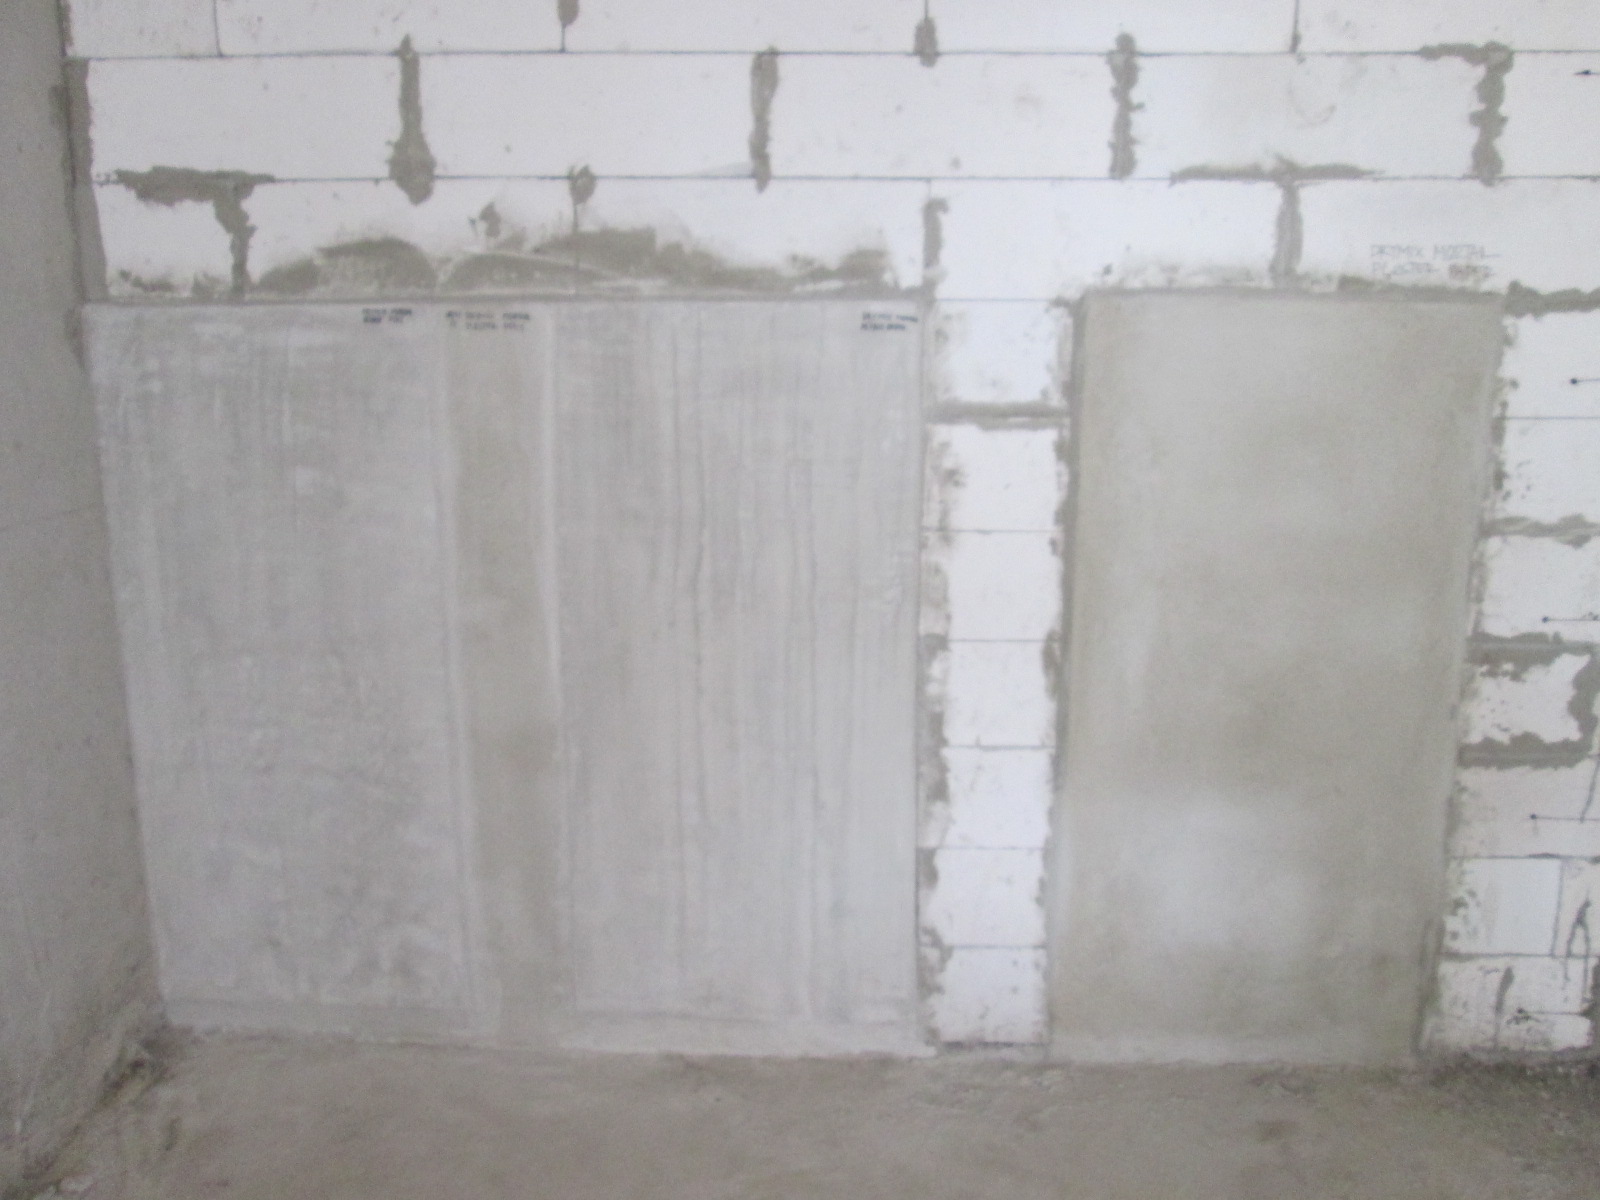  Menghitung kebutuhan semen mortar pada plesteran dinding 